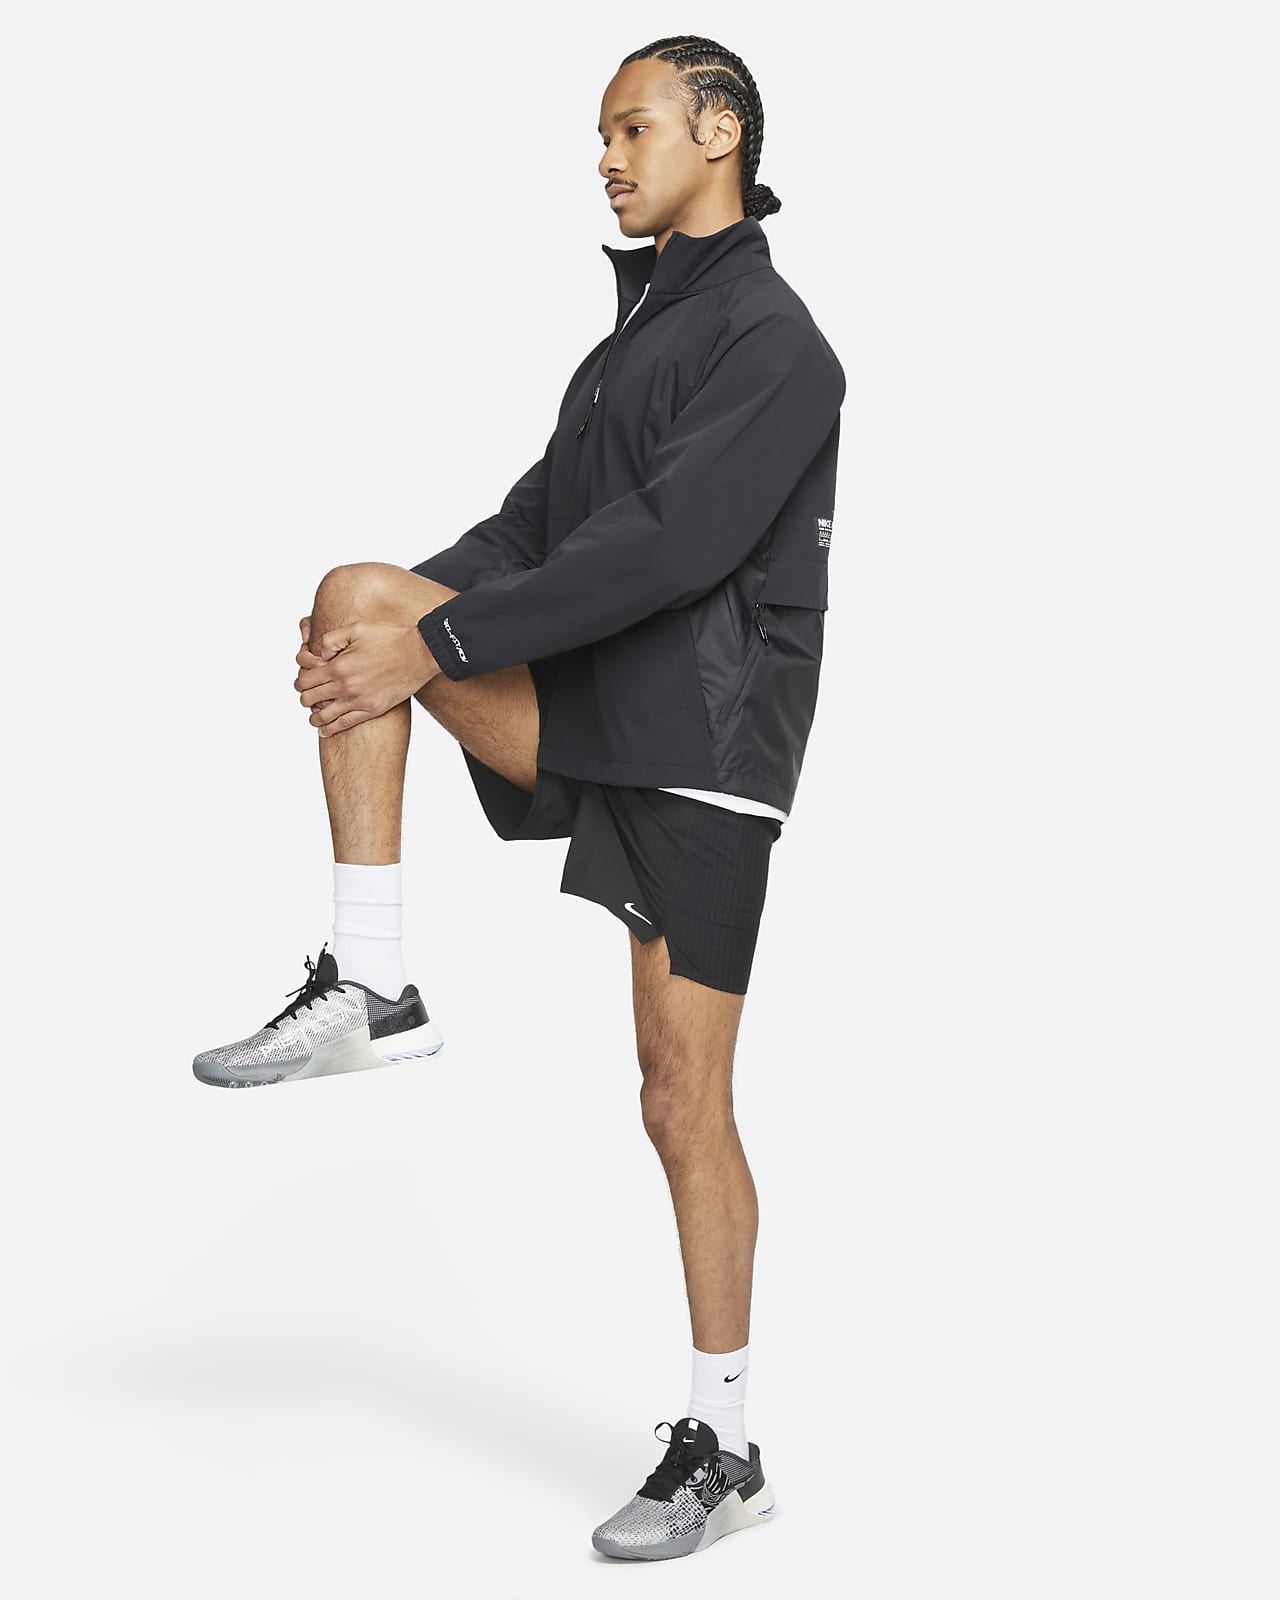 Kennis maken Eigenlijk Uitbreiden Nike Dri-FIT ADV A.P.S. Men's Fitness Jacket. Nike.com